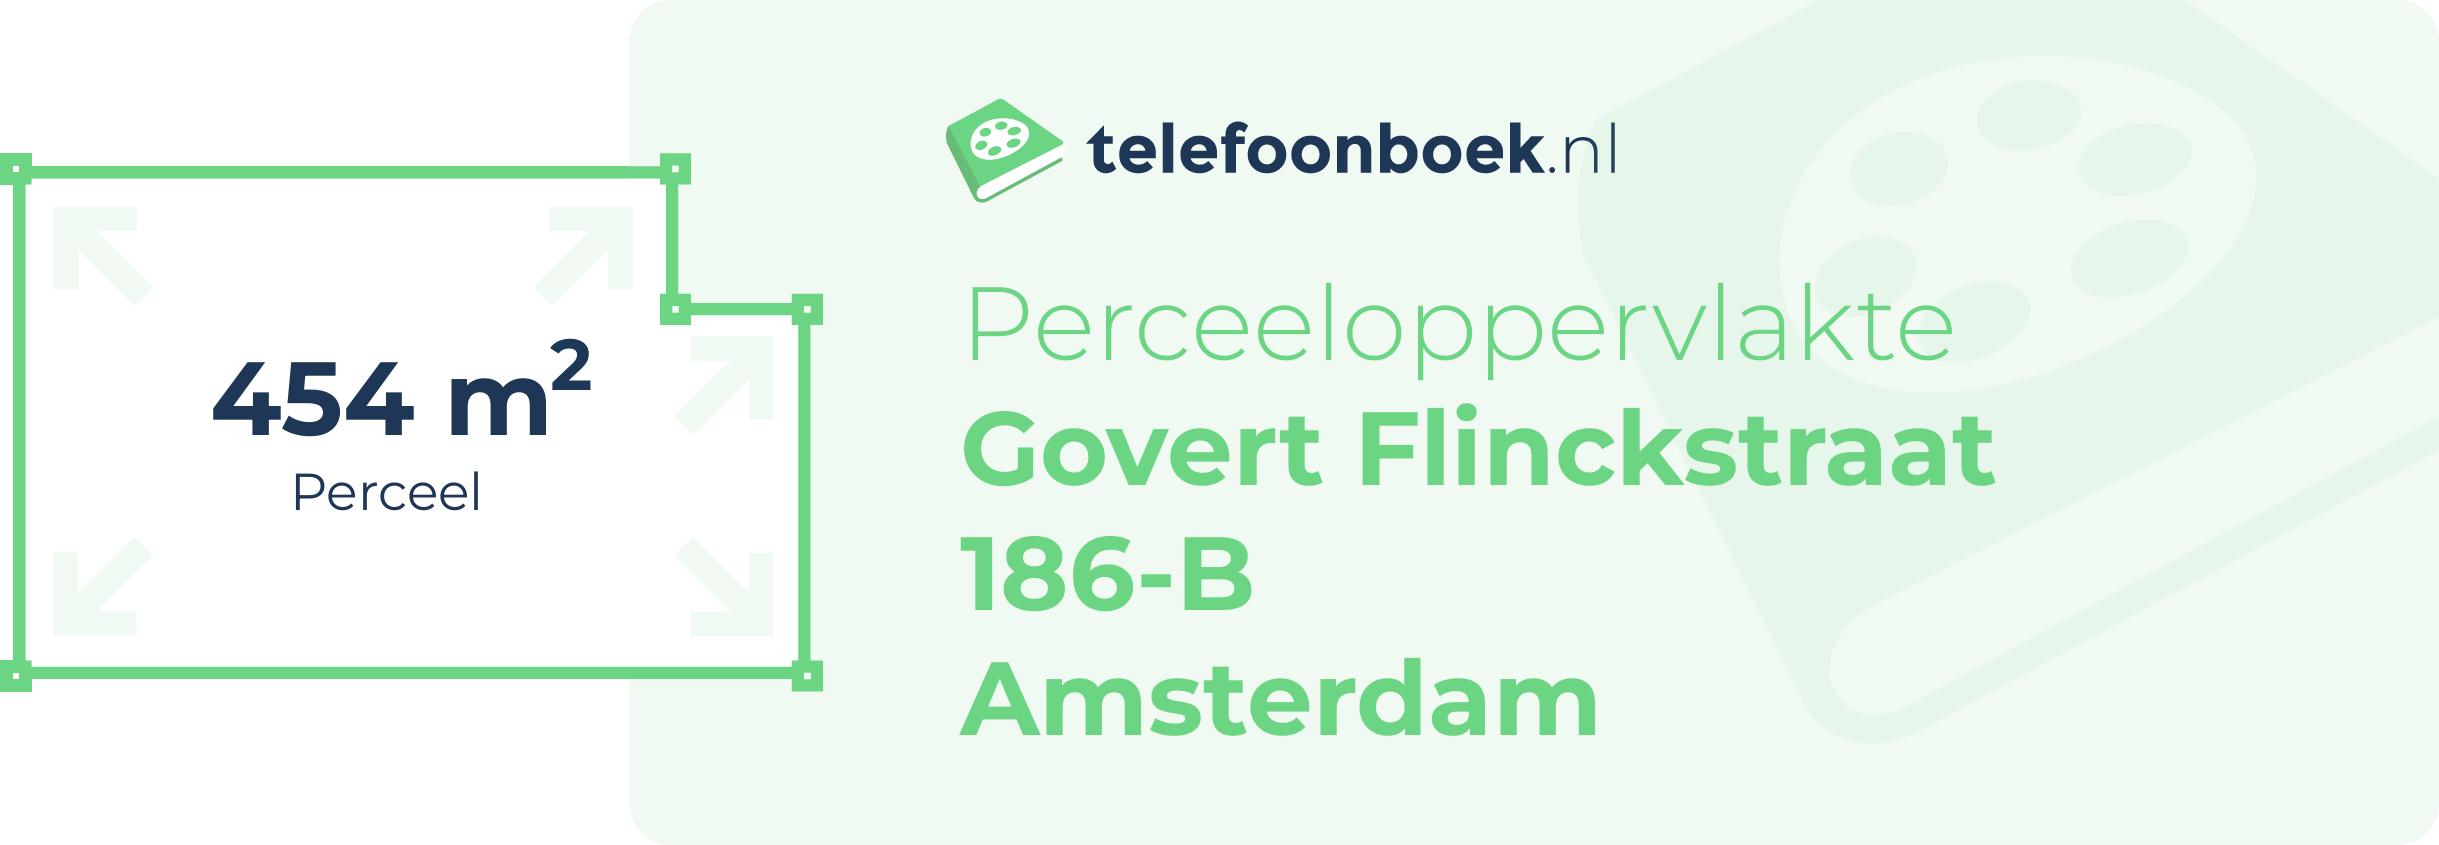 Perceeloppervlakte Govert Flinckstraat 186-B Amsterdam